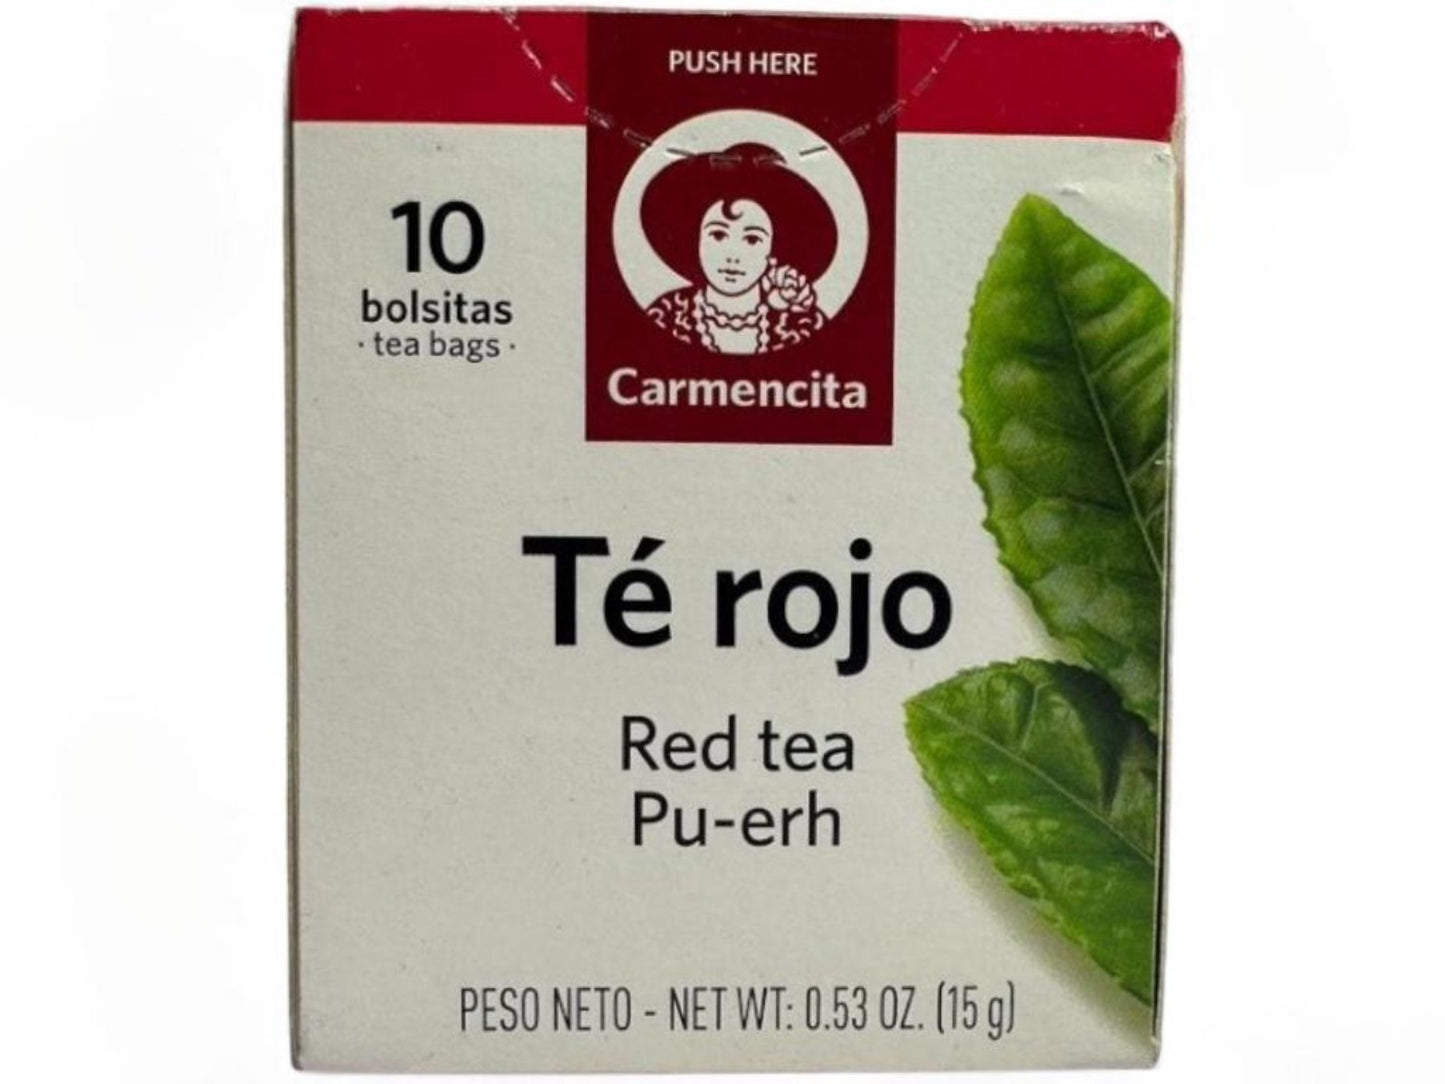 Carmencita Red Tea Pu-Erh 10x bags 15g